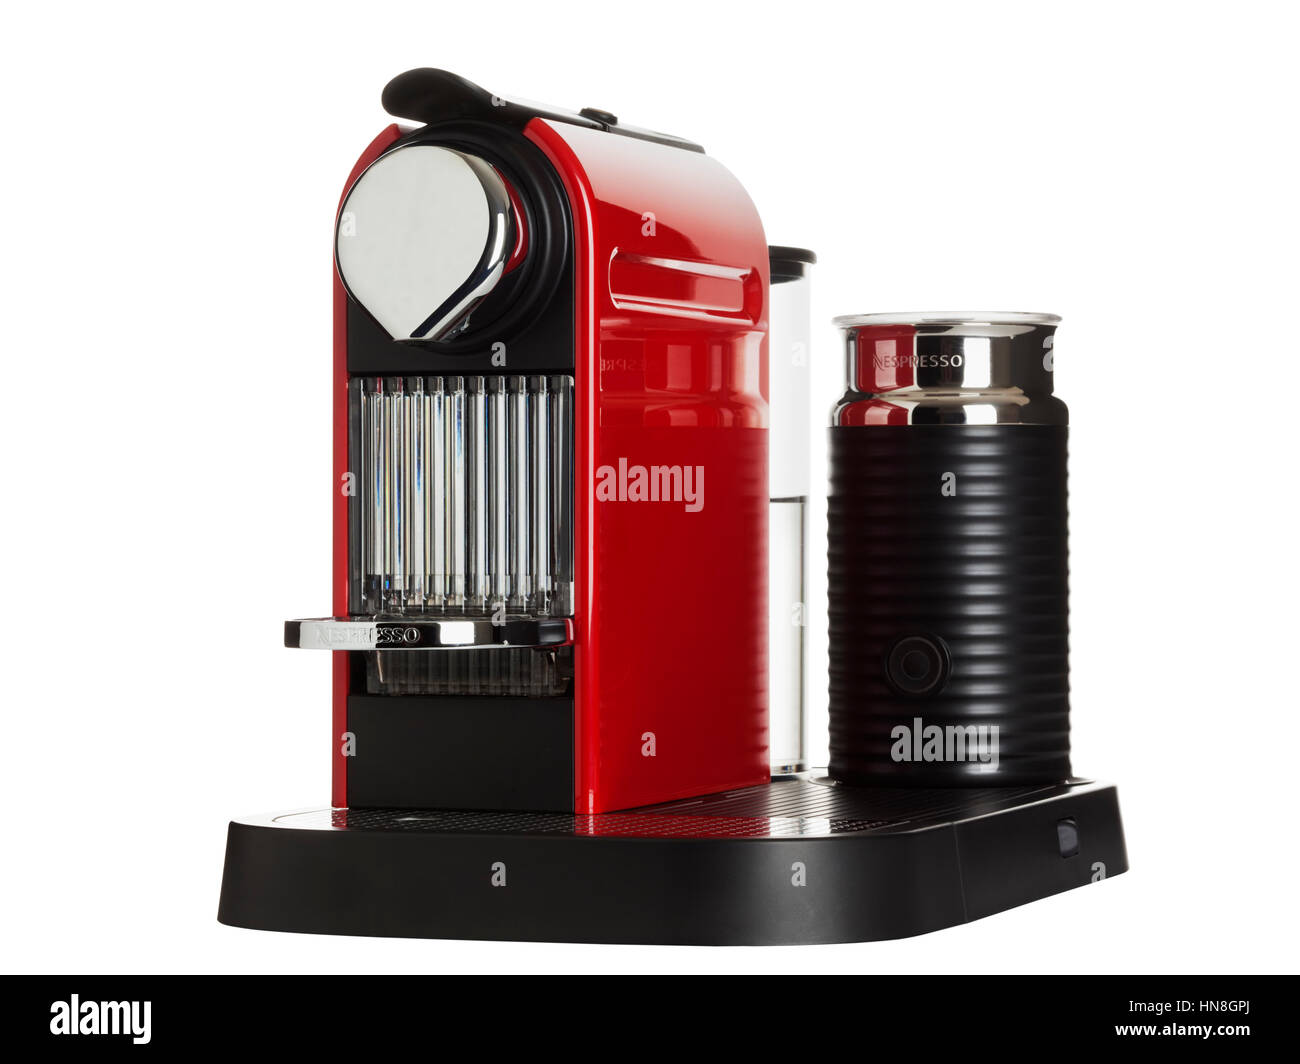 Citiz Nespresso rouge plus une dosette de lait machine faite par Krups  isolé sur fond blanc Photo Stock - Alamy